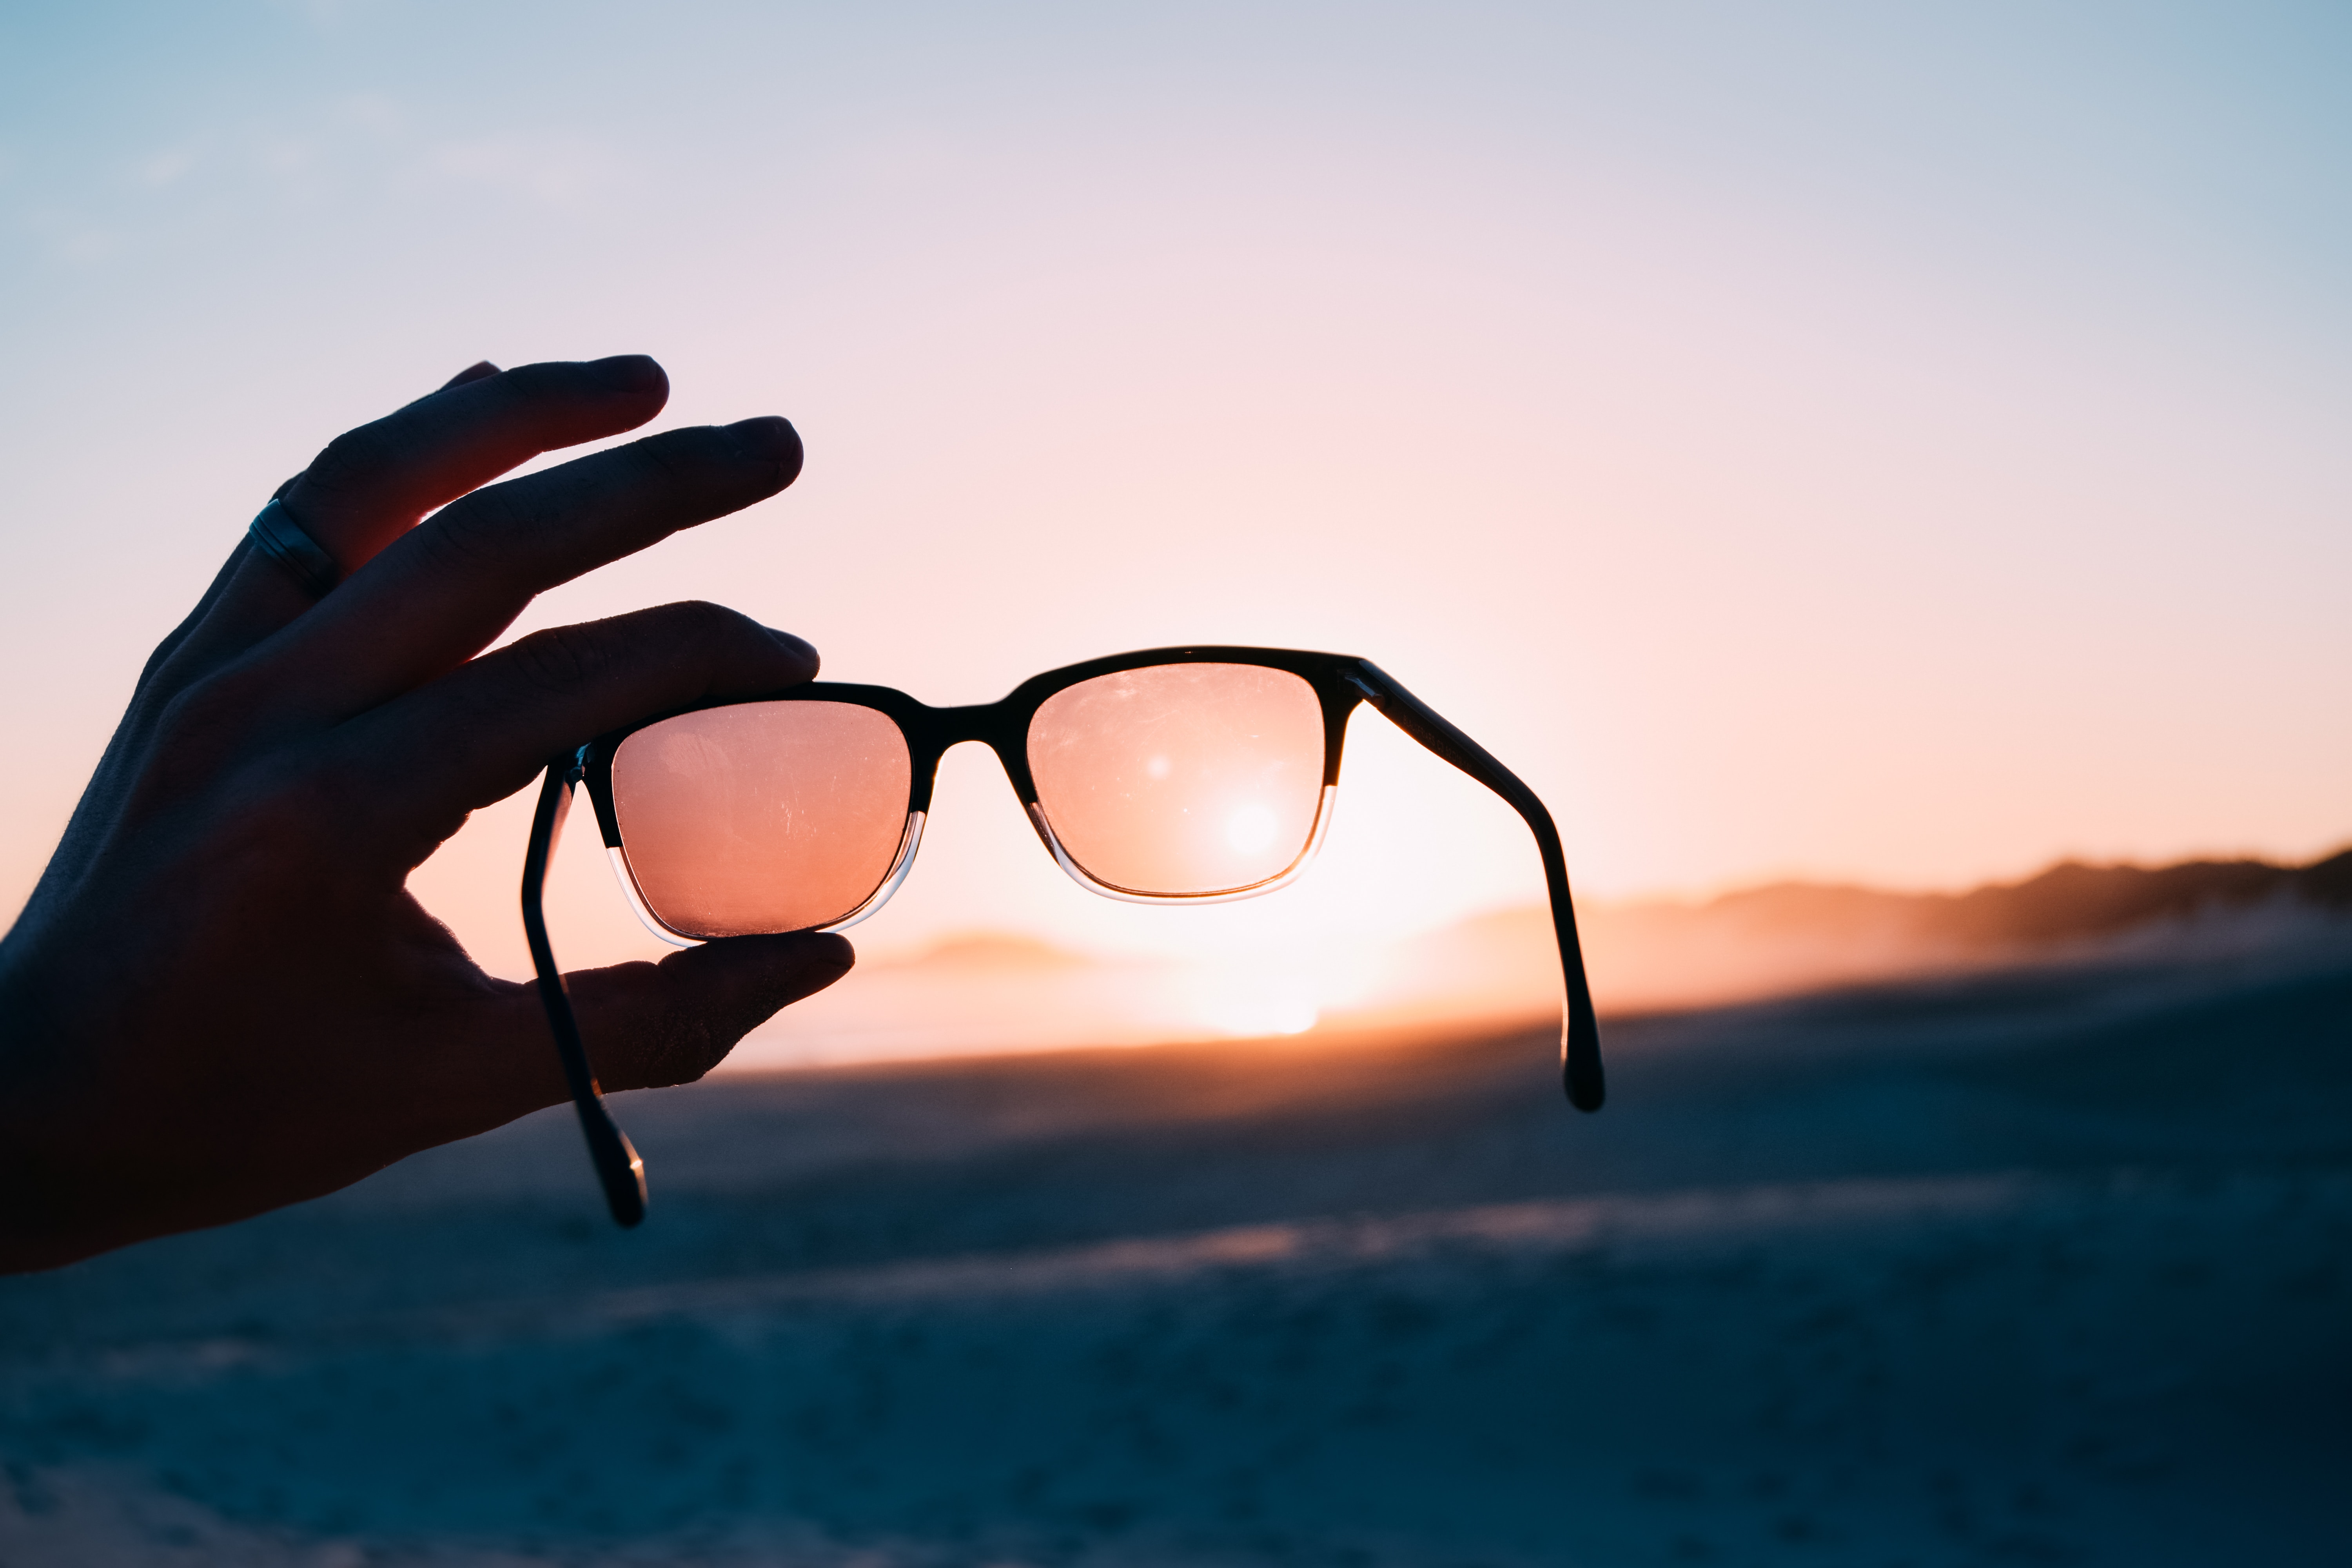 okulary przeciwsłoneczne z polaryzacją